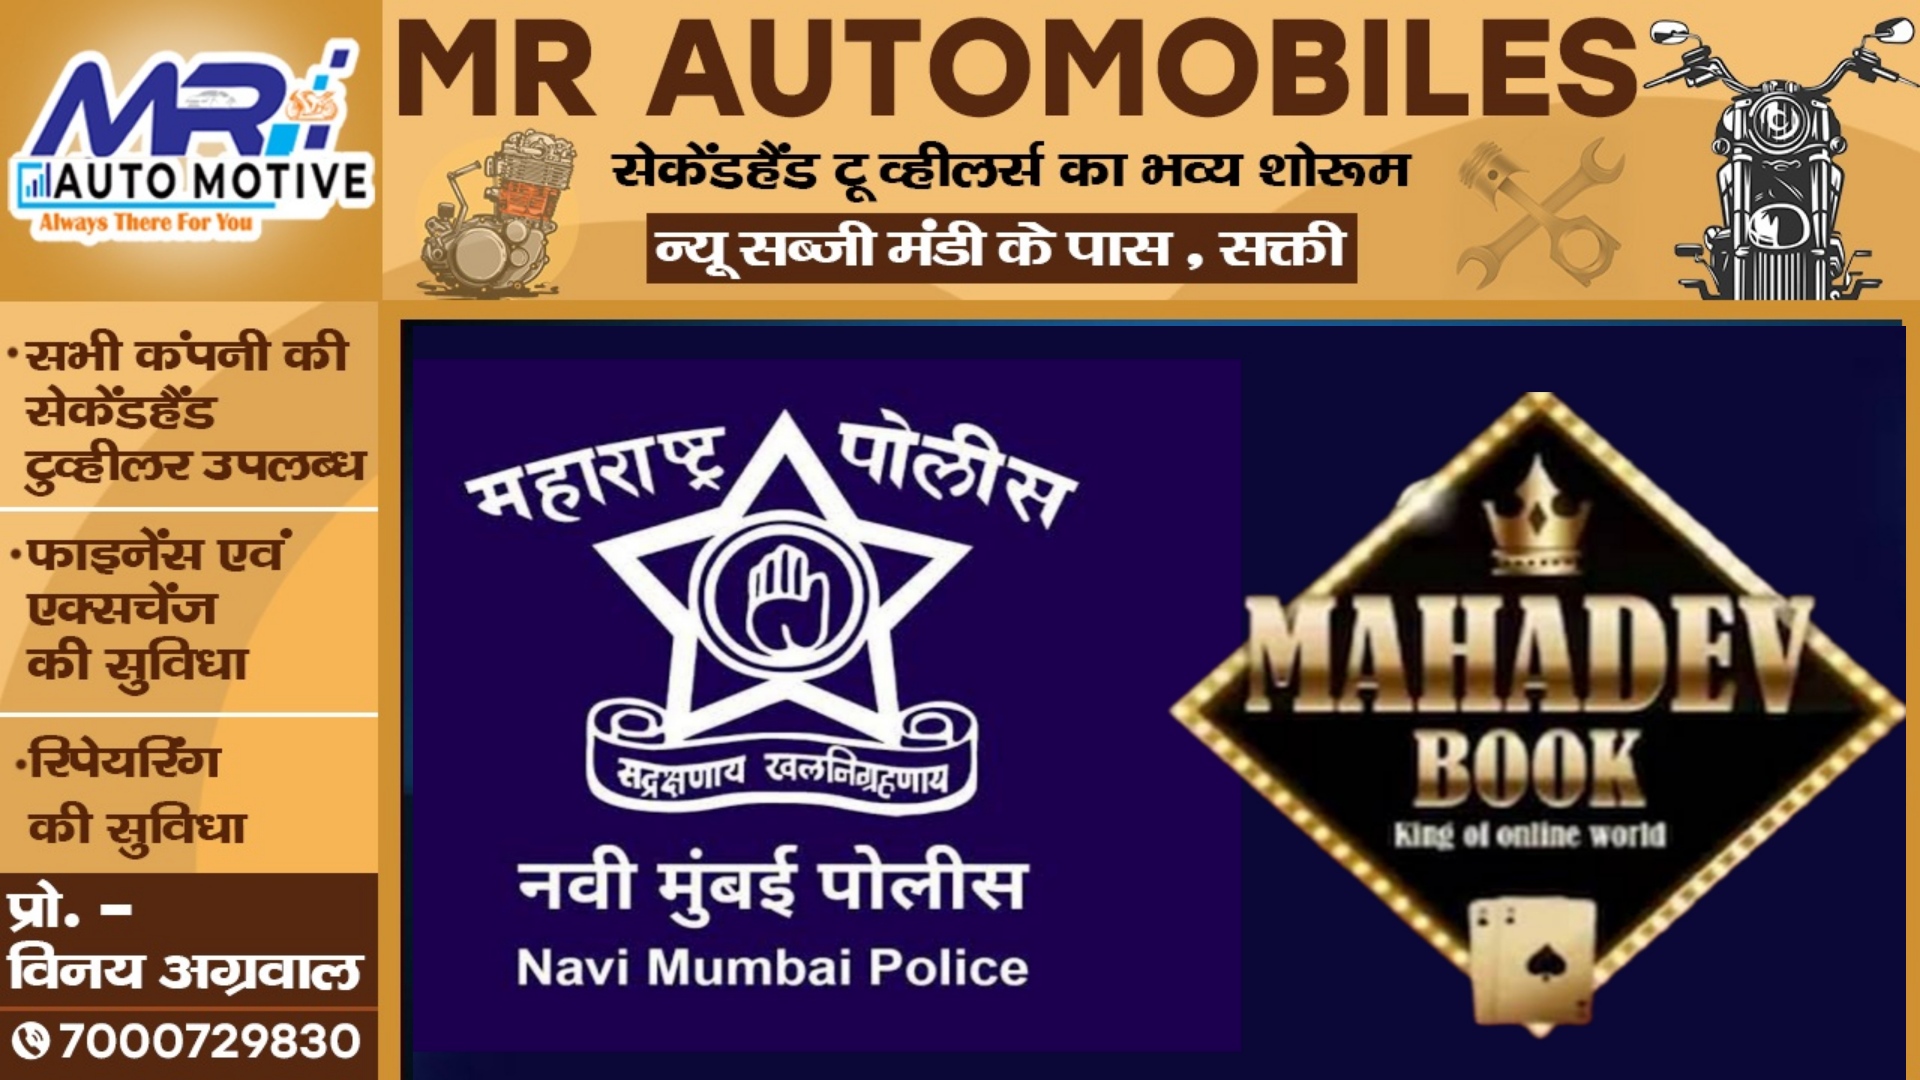 महादेव ऑनलाइन सट्टा बुक एप में मुंबई पुलिस की एंट्री , 32 लोगो के खिलाफ गंभीर धाराओं में FIR दर्ज